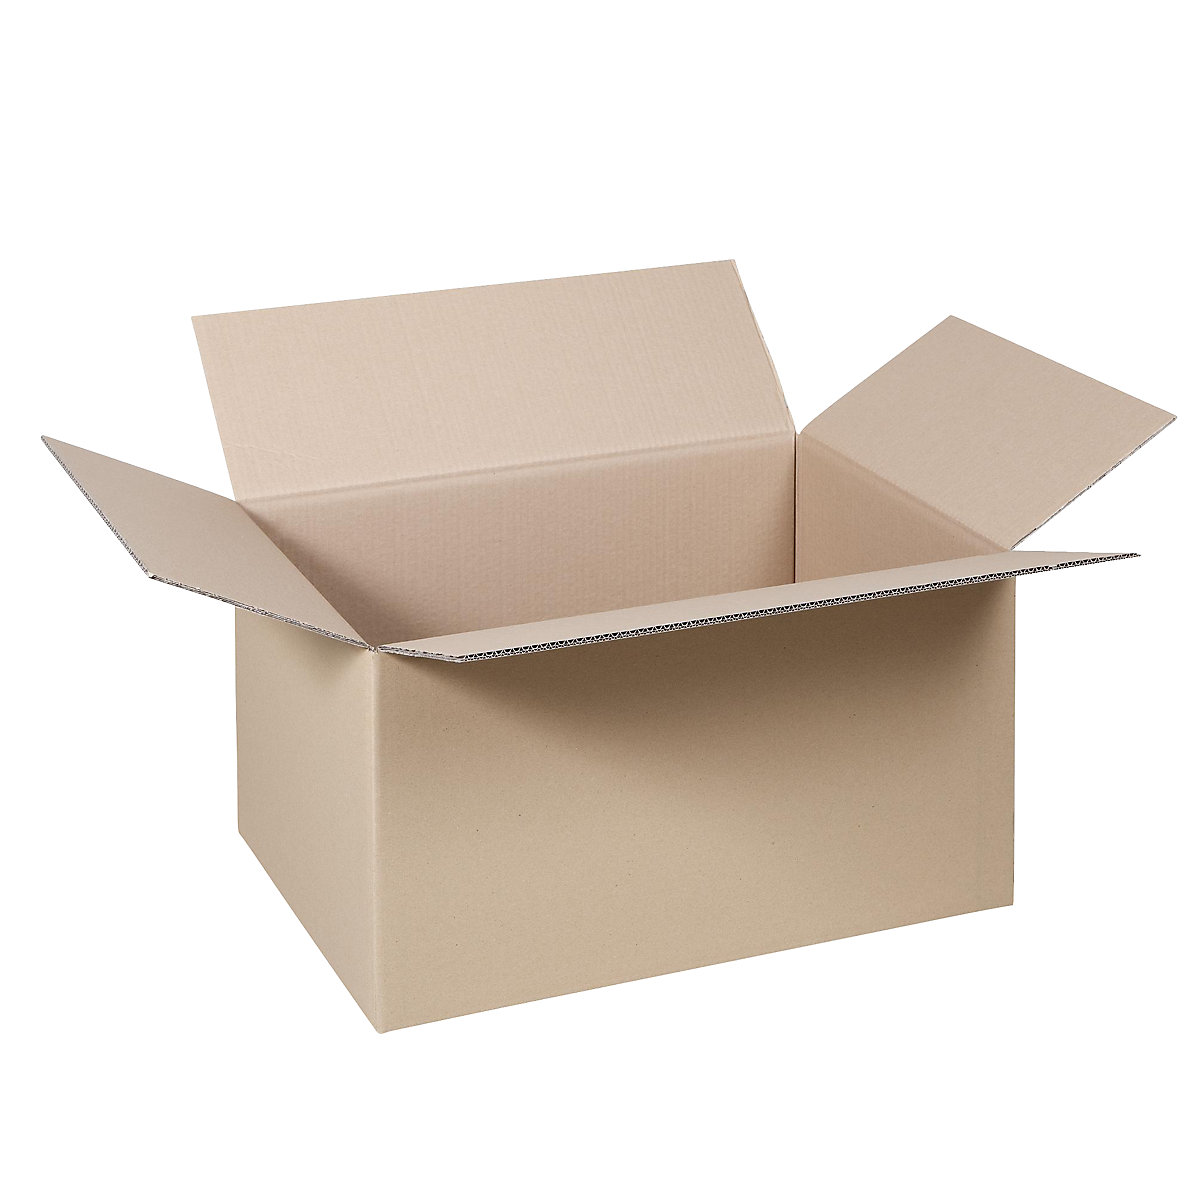 Cutie de carton pliantă, FEFCO 0201, cu 2 straturi de carton ondulat, dimensiuni interioare 600 x 400 x 300 mm, amb. 100 buc.-1